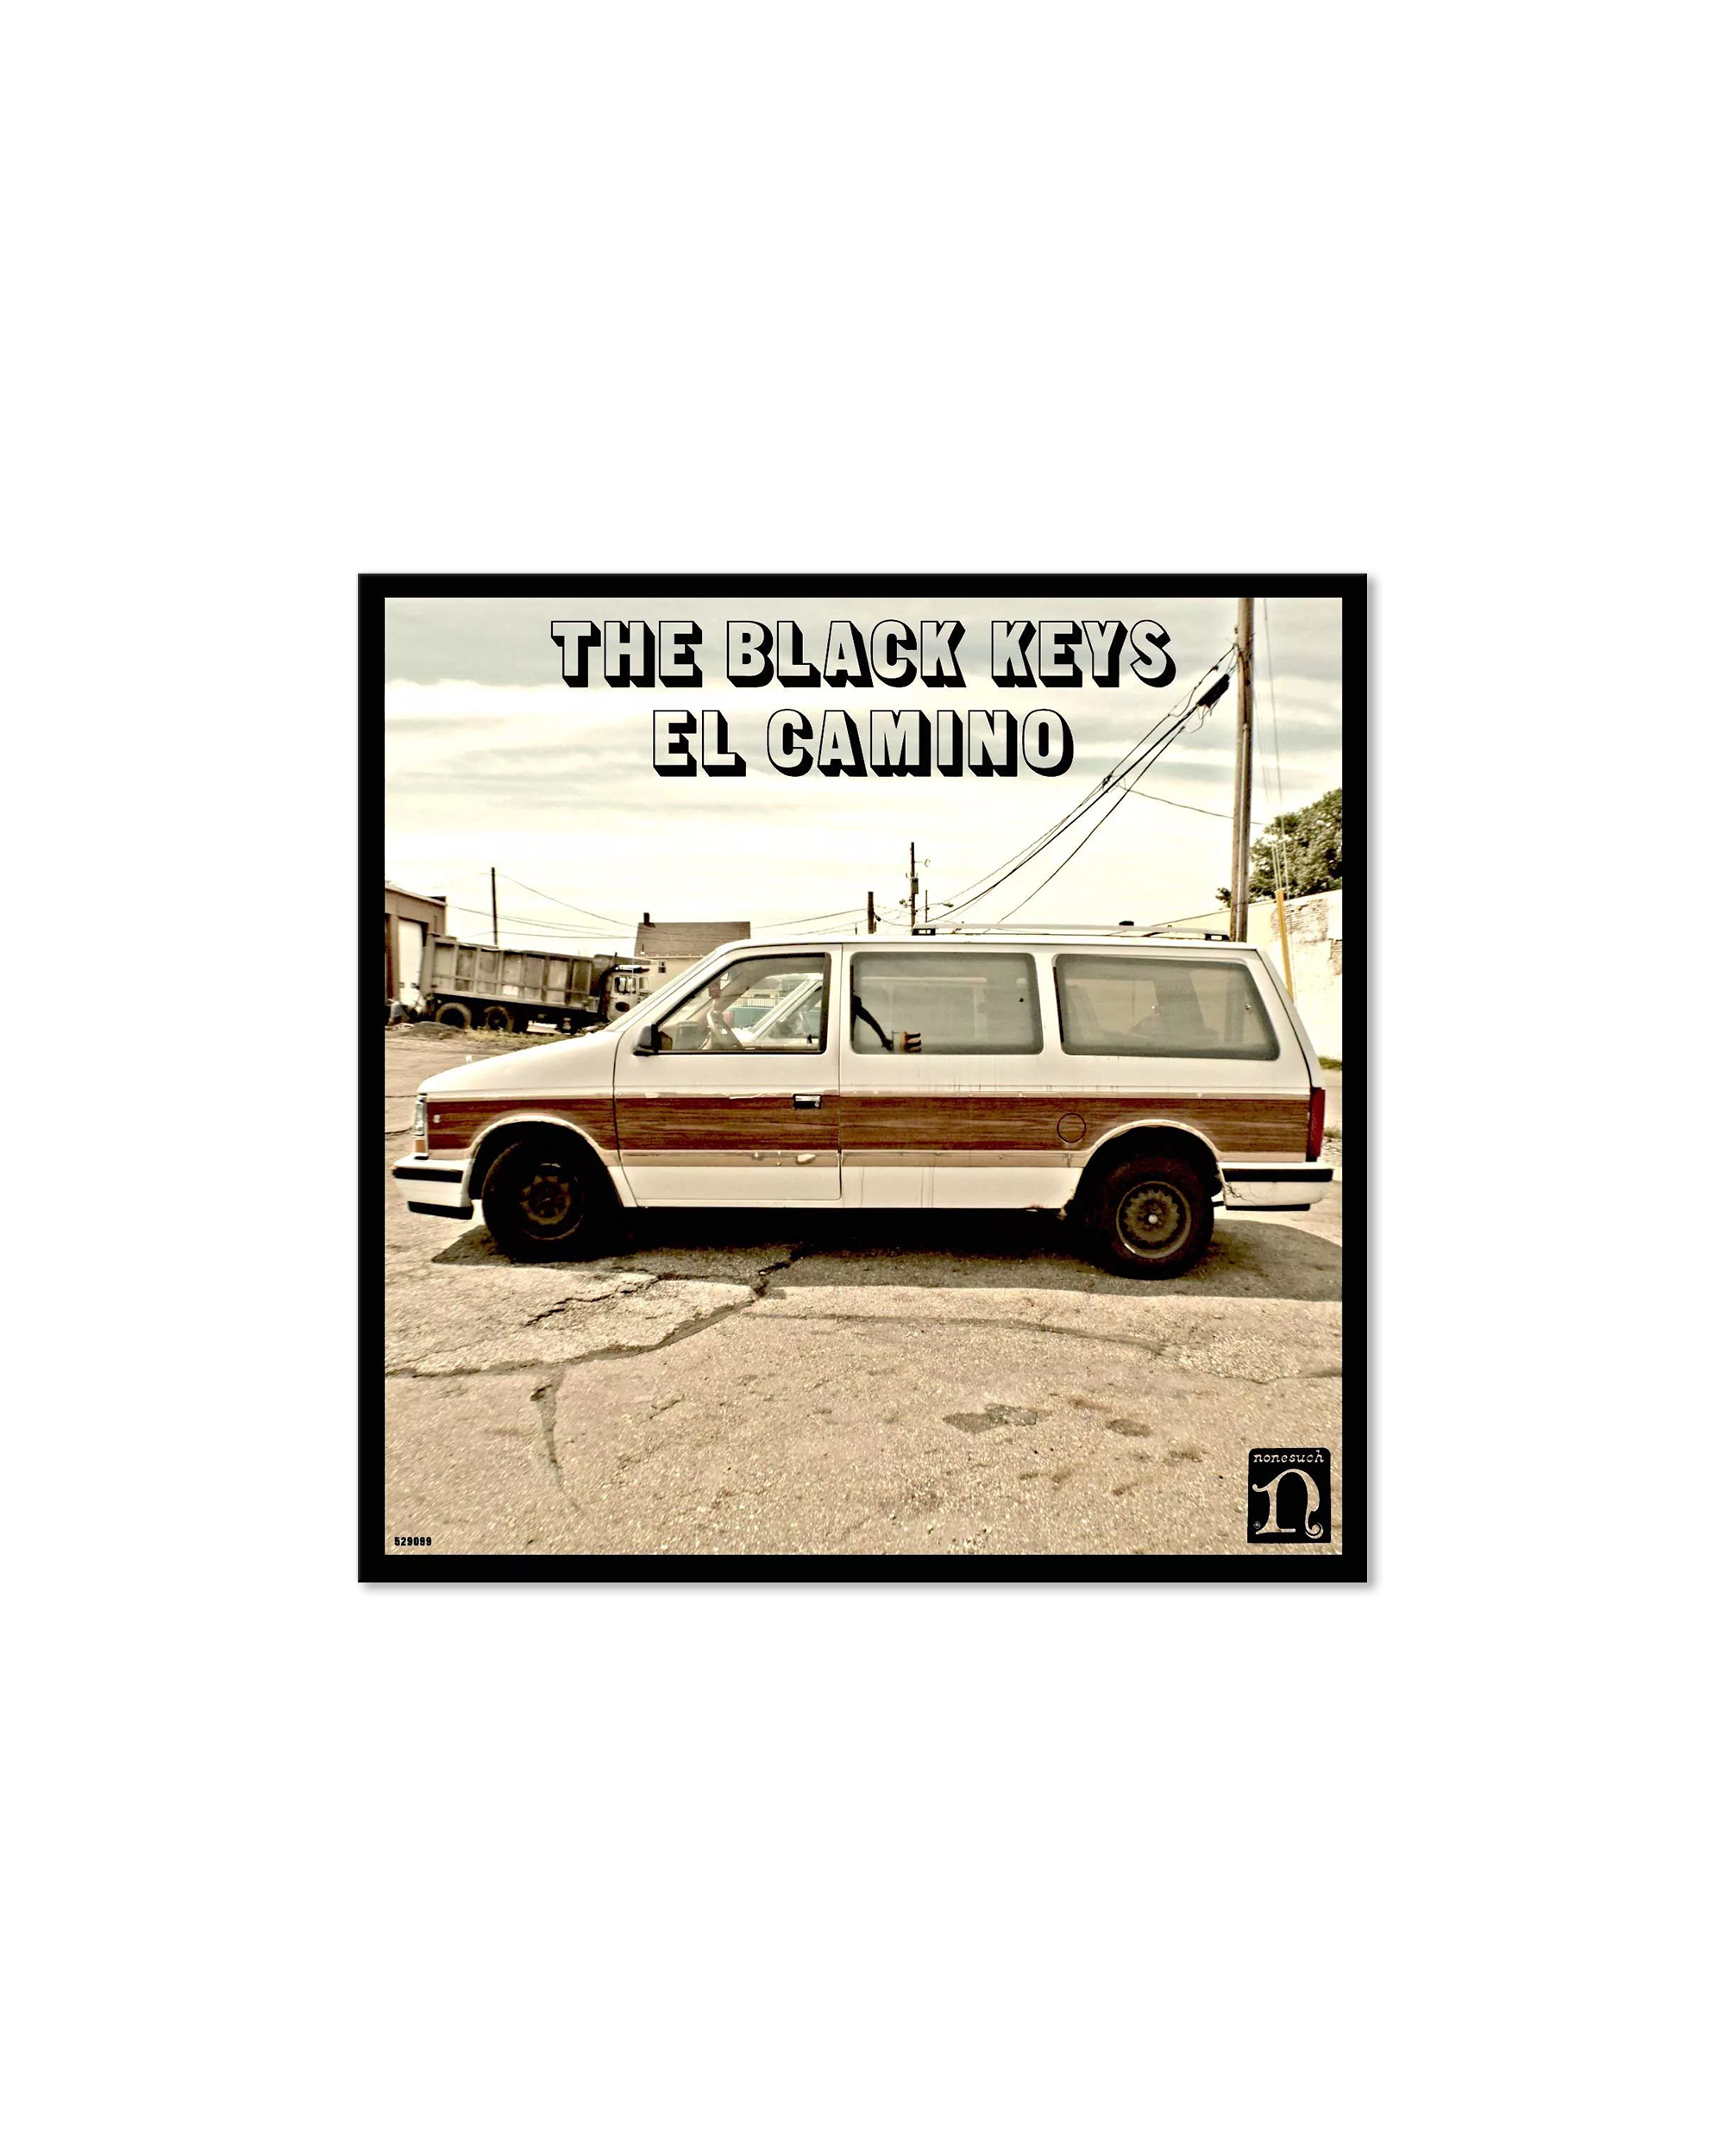 The Black Keys - El Camino (10th Anniversary Deluxe Edition) [3LP]